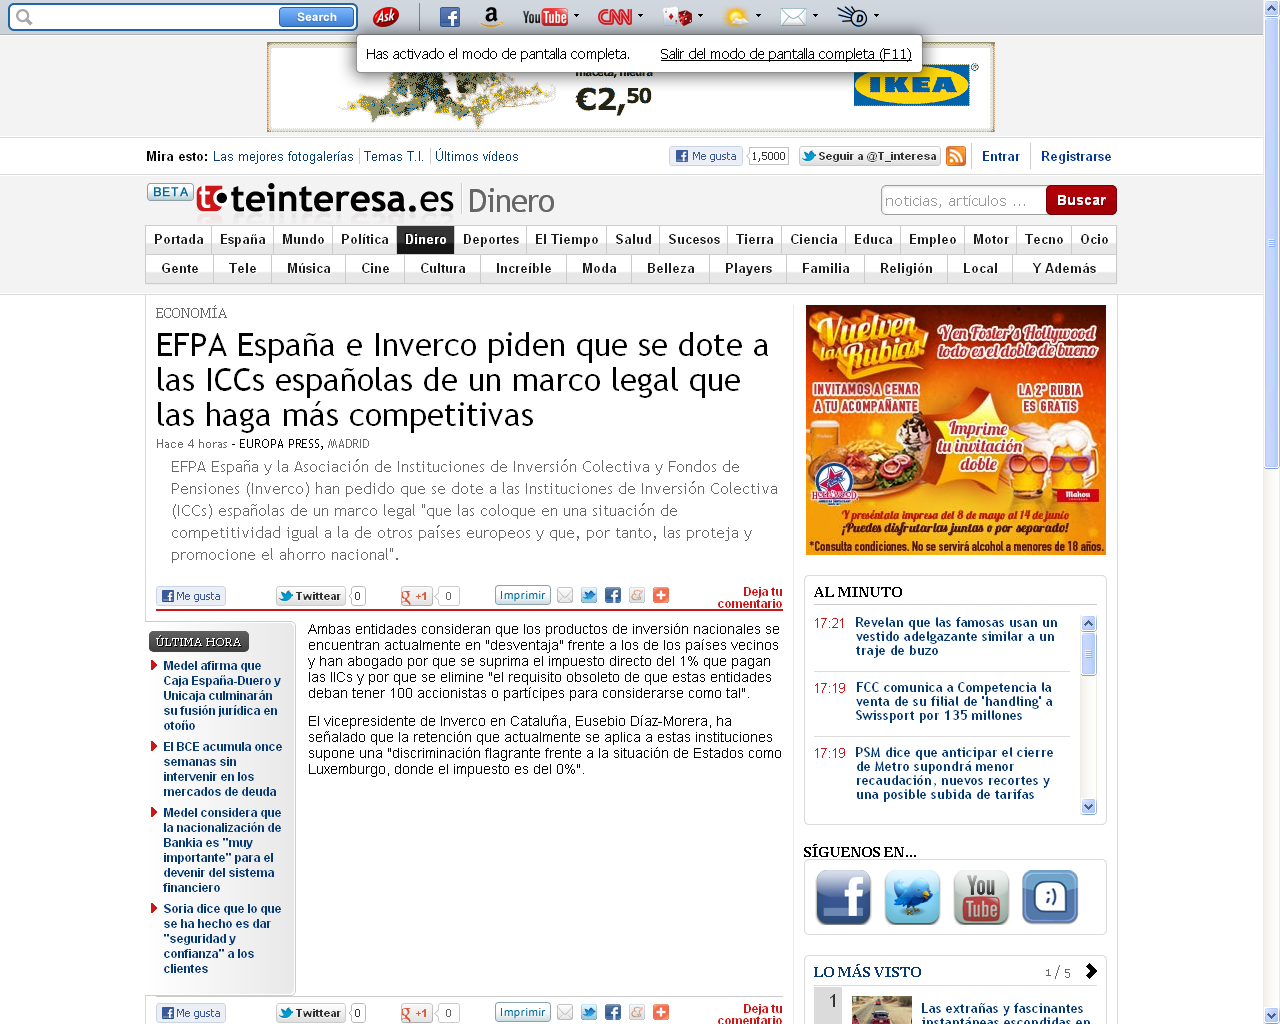 Medio: Te interesa Fecha: 28.05.2012 Cliente: EFPA Link: http://www.teinteresa.es/dinero/finanzas/efpa-espana-inverco-iccs-competitivas_0_708529743.